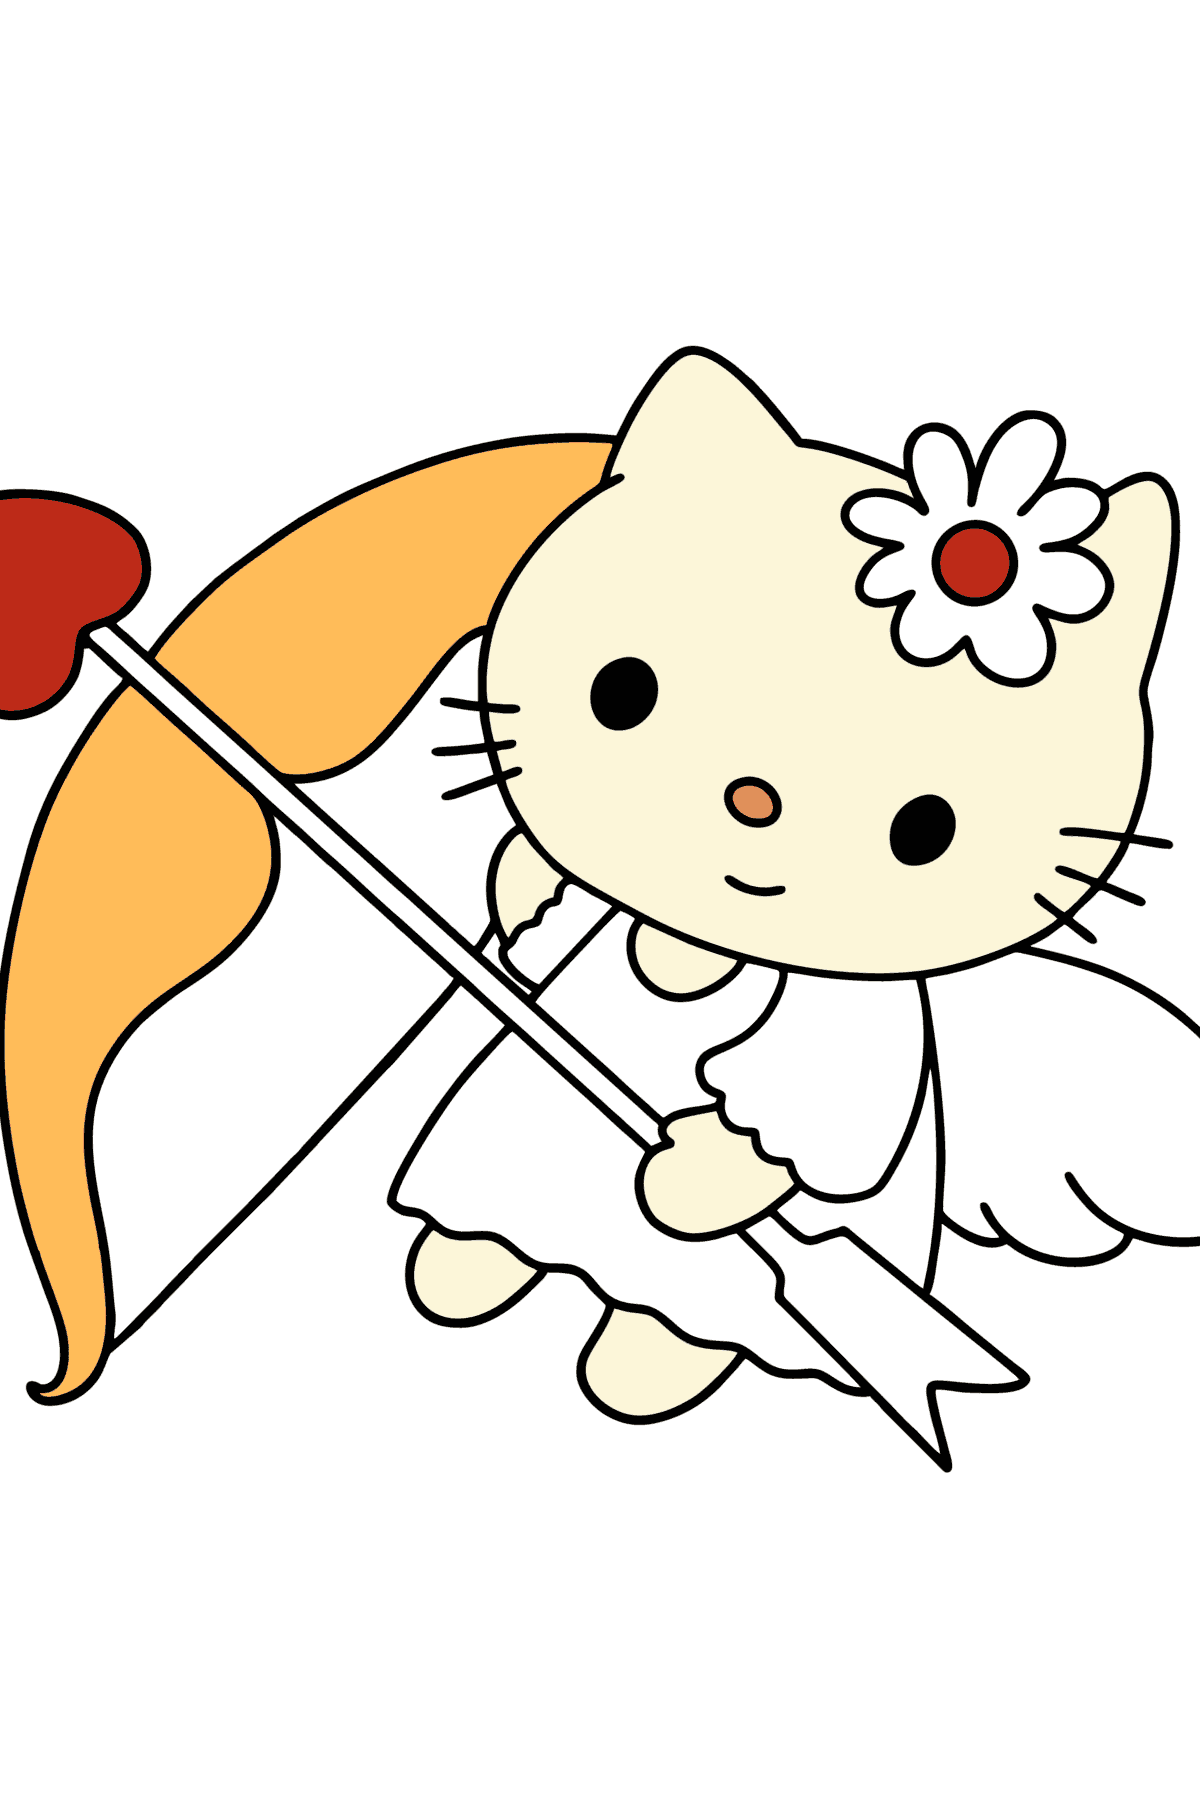 Desenho para colorir Hello Kitty do dia dos namorados - Imagens para Colorir para Crianças